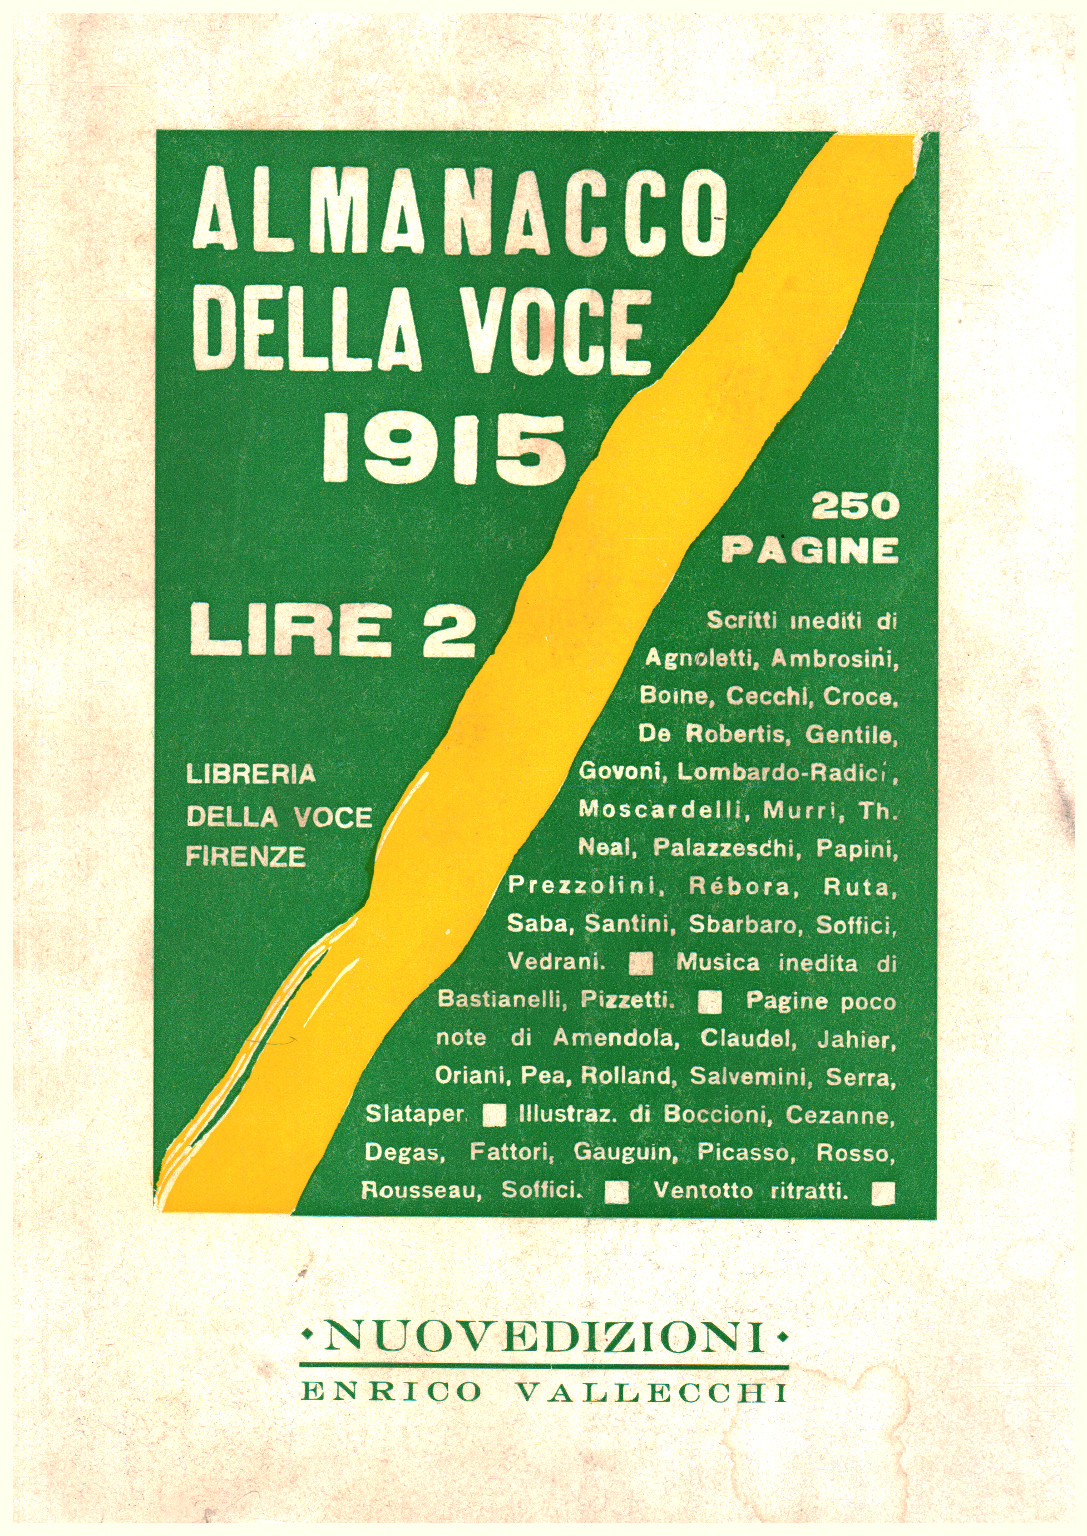 Almanacco della voce 1915, s.a.